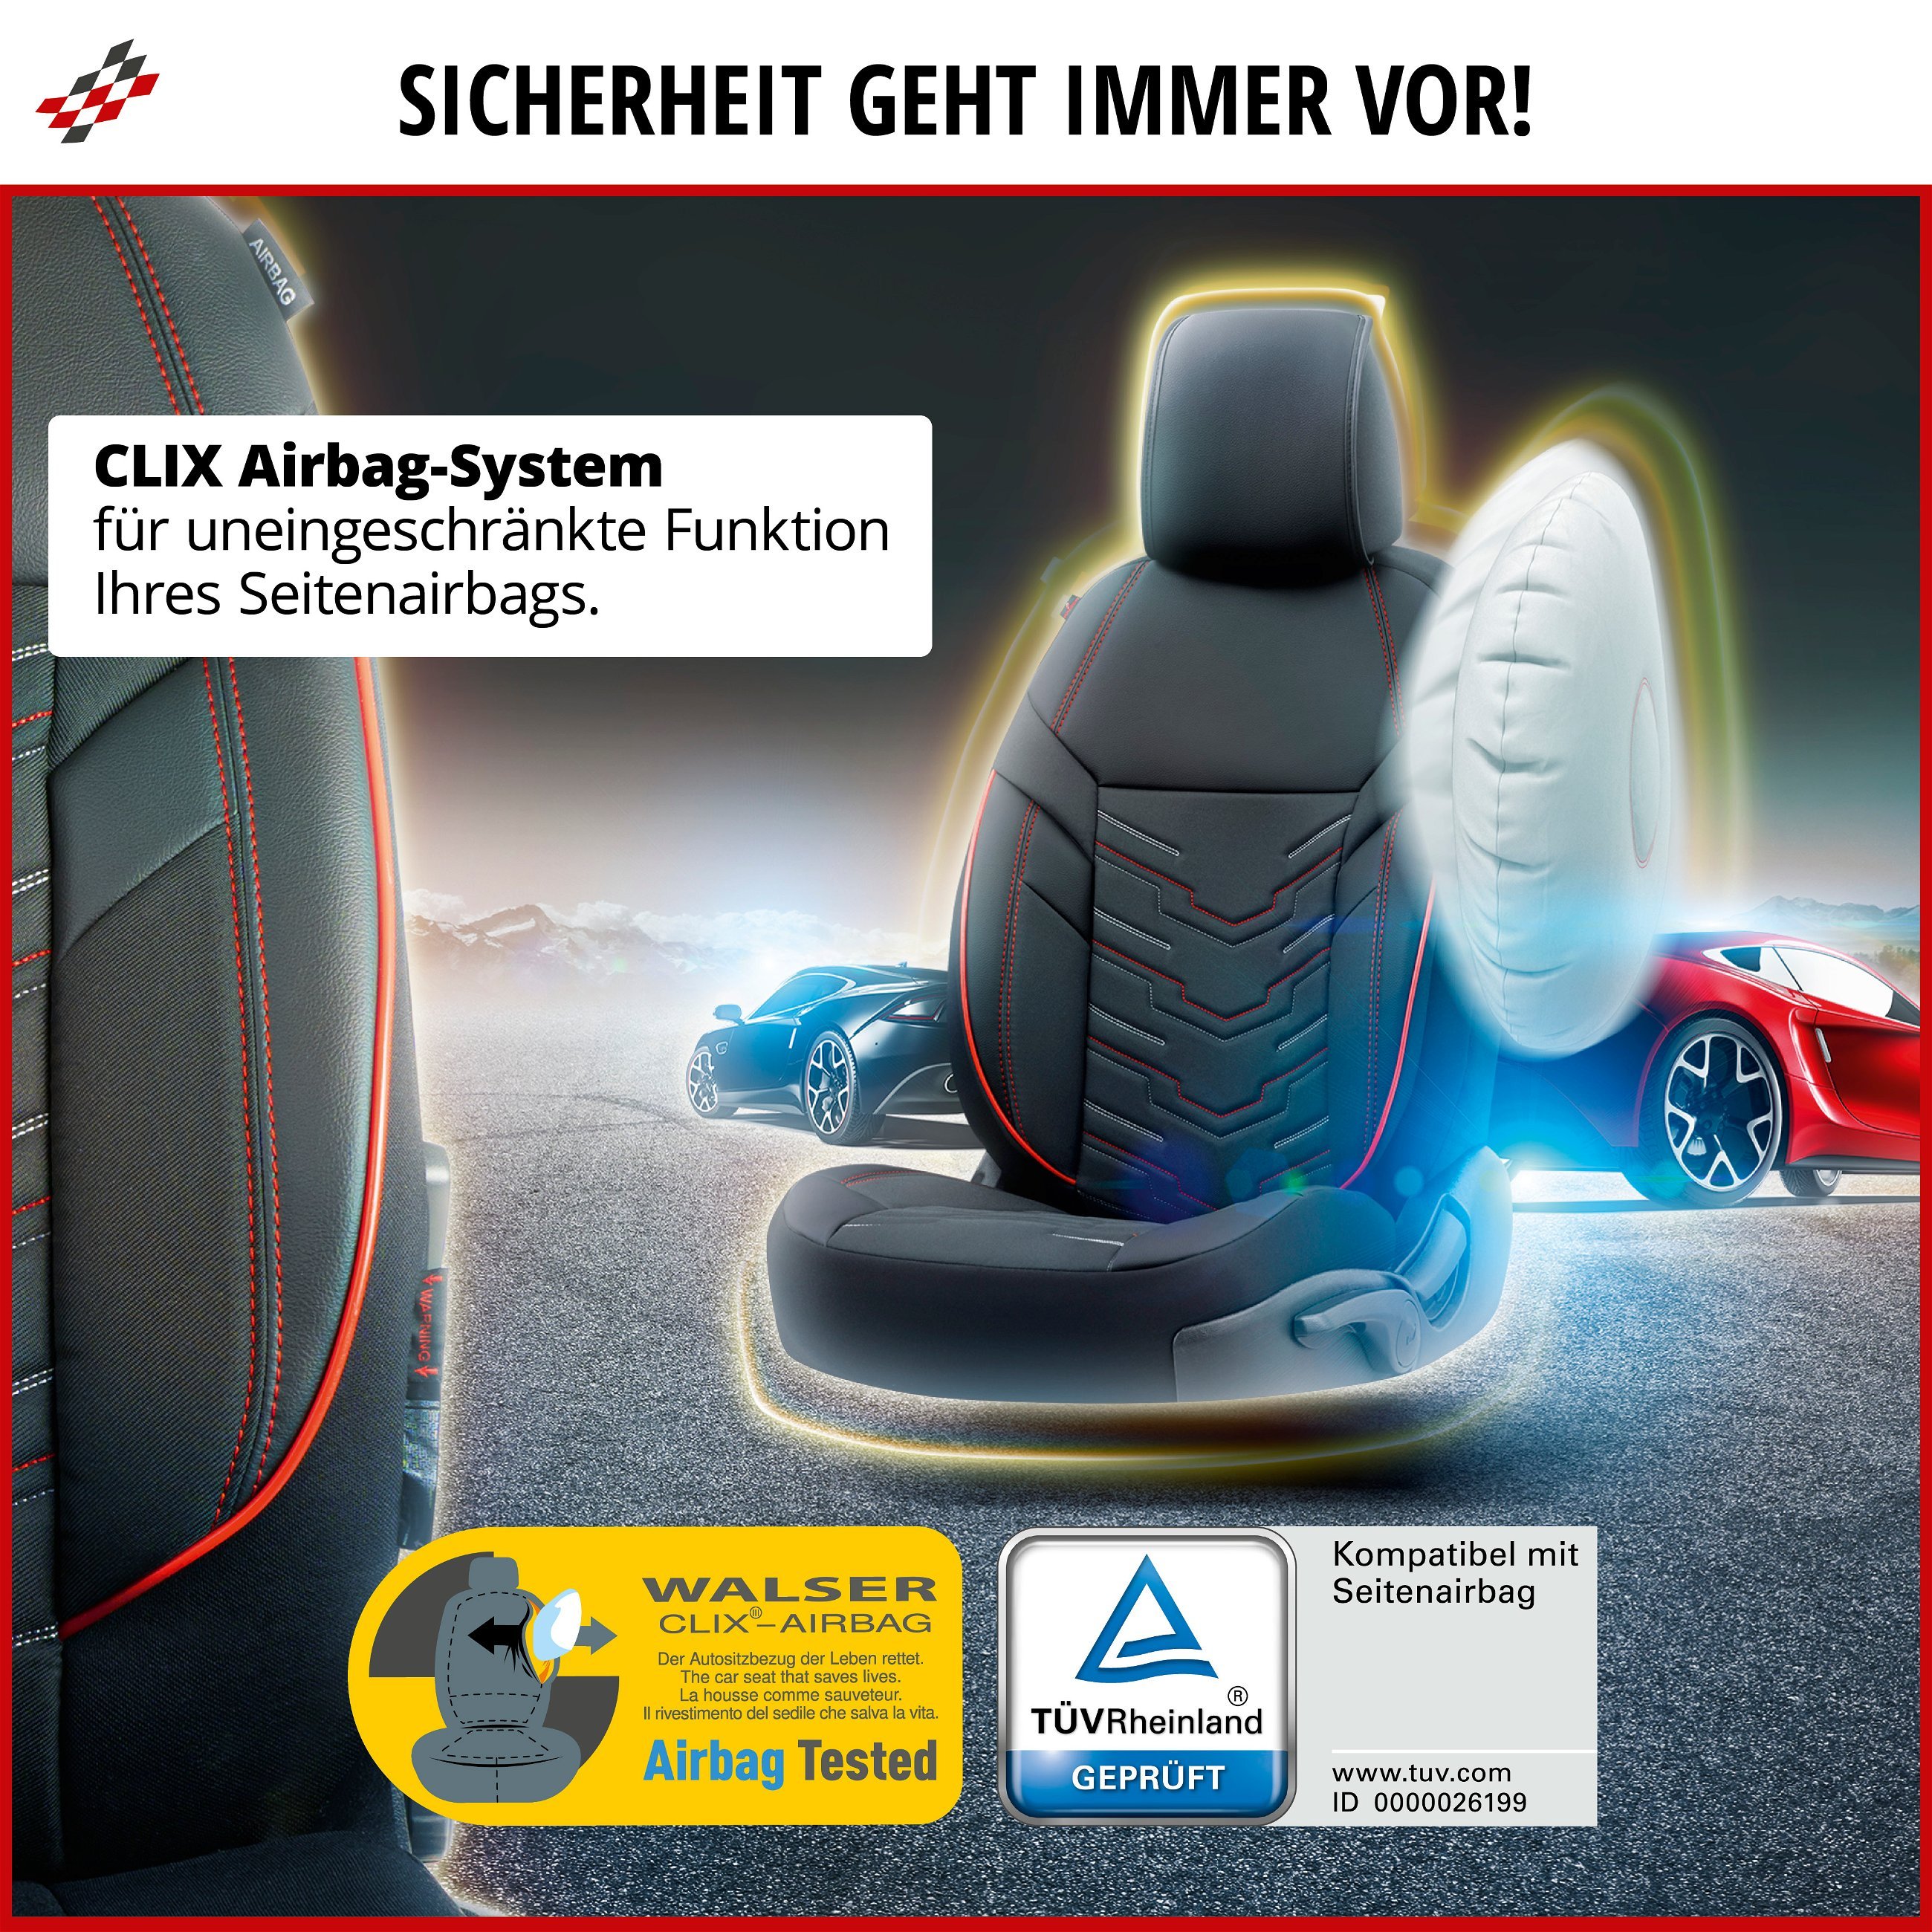 Autositzbezug ZIPP-IT Deluxe Marbella, PKW-Schonbezüge für 2 Vordersitze mit Reißverschluss-System schwarz/rot